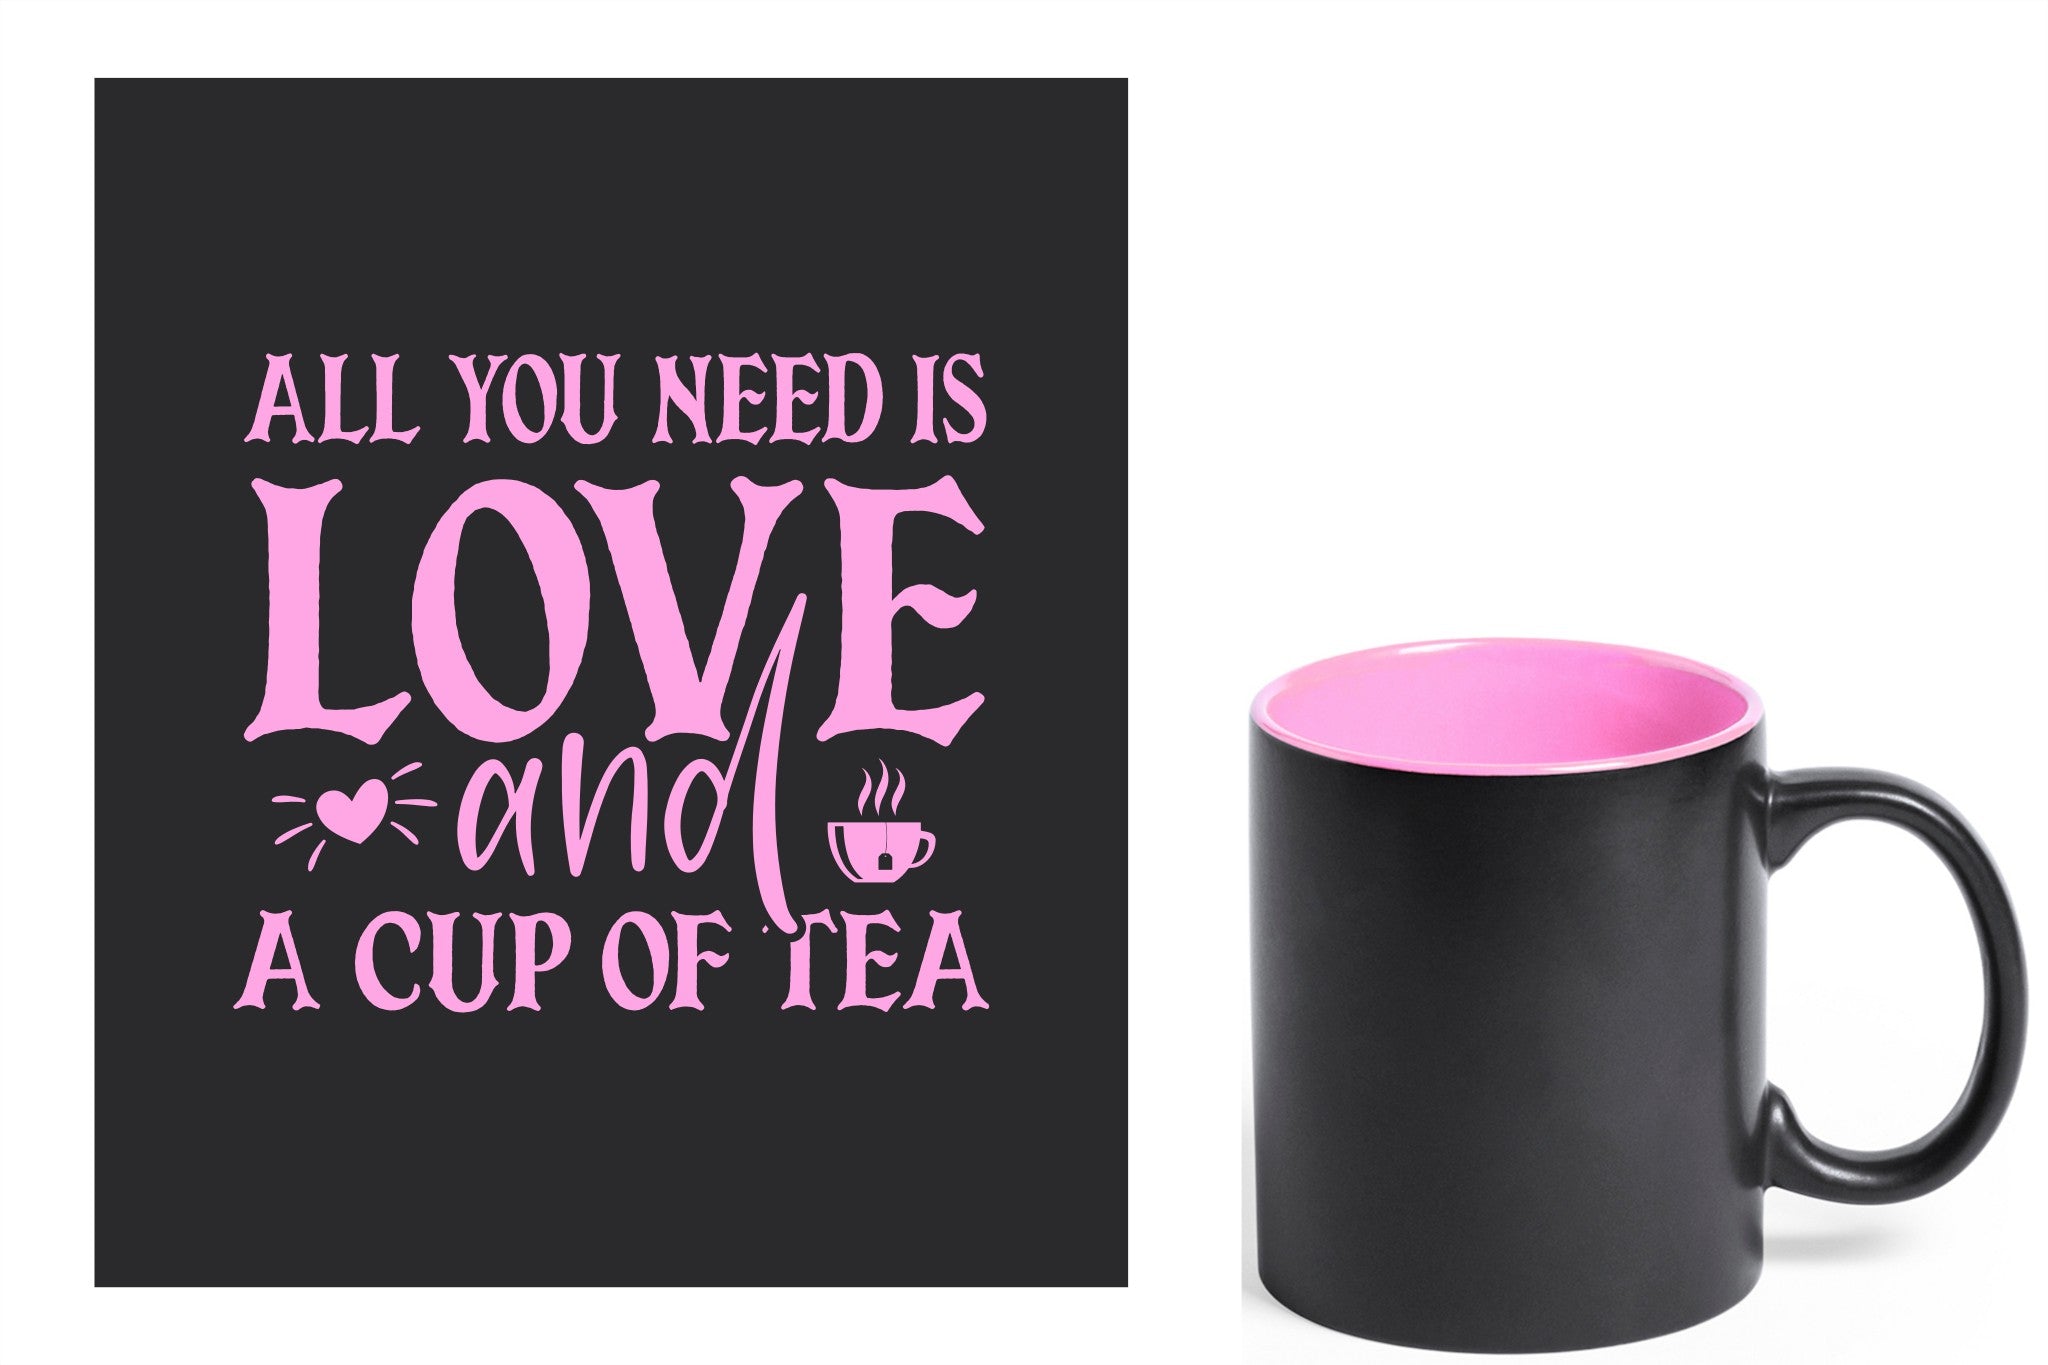 zwarte keramische mok met roze gravure  'All you need is love and a cup of tea'.